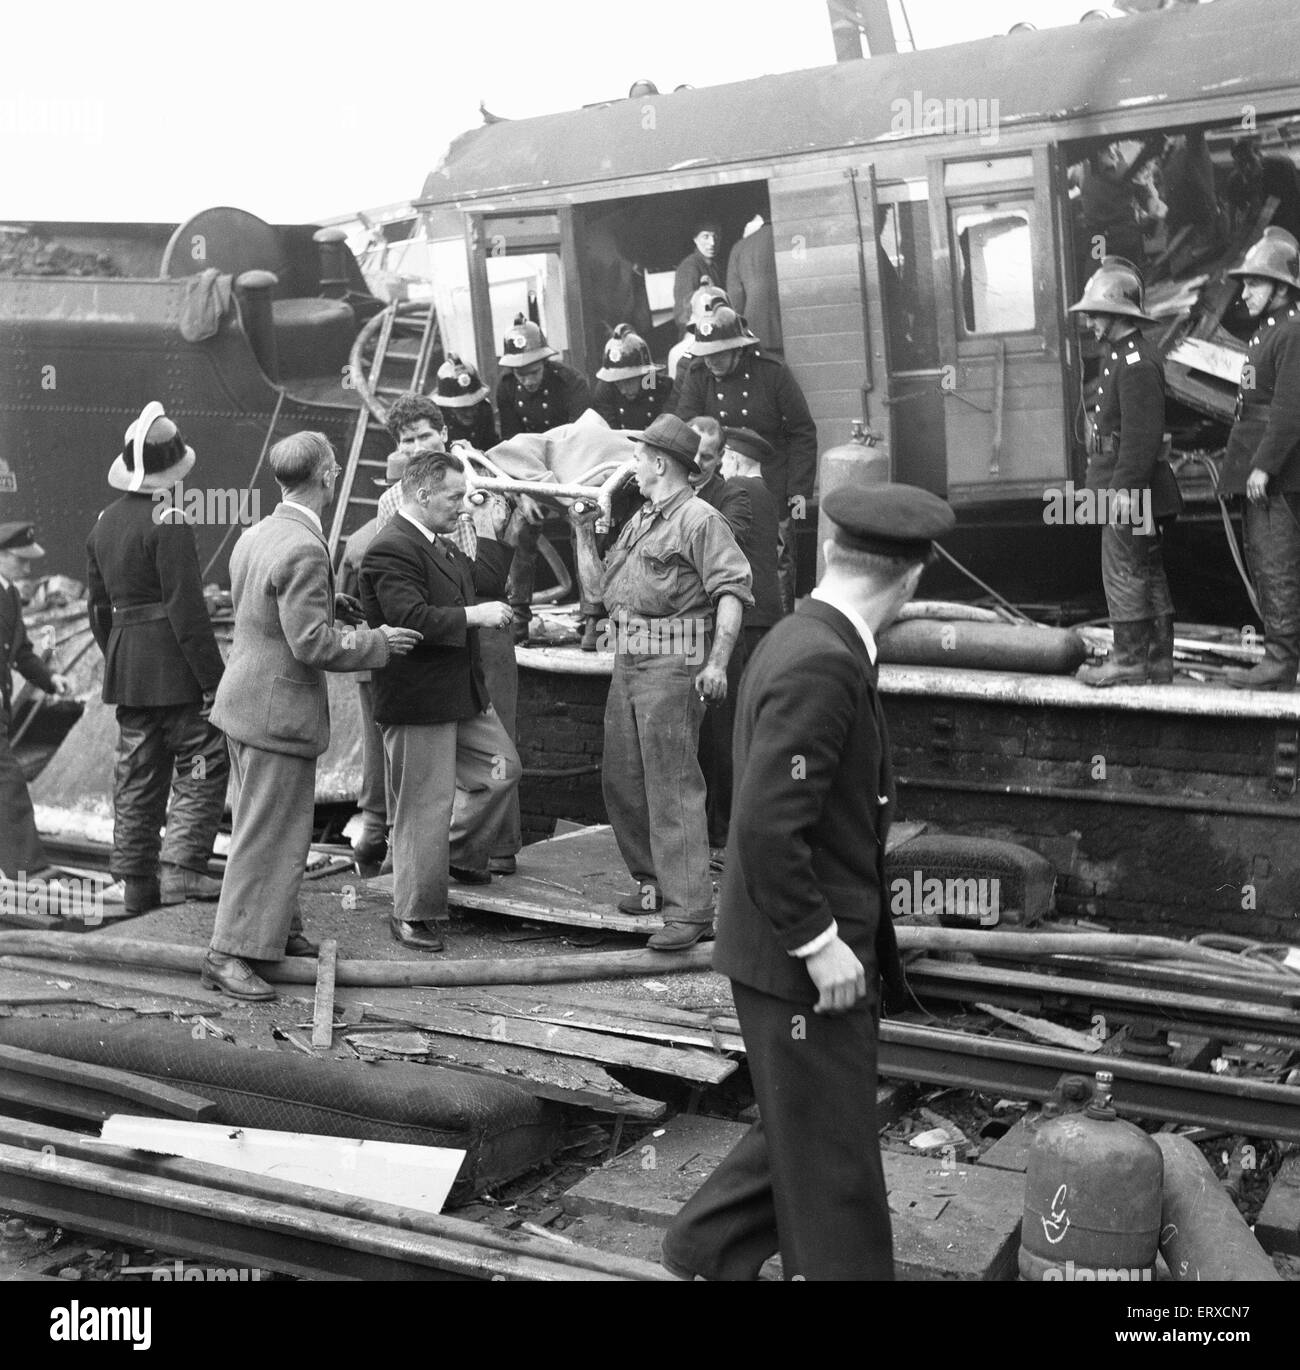 Die Egge und Wealdstone Schiene Abbruch war eine drei Zug-Kollision an der Egge und Wealdstone Station in London, um 08:19 am 8. Oktober 1952. Ein d-Zug von Perth, Schottland kollidierte mit Geschwindigkeit in den hinteren Teil der Tring, Euston Dienstleistung Personenzug, die am Bahnhof stehen geblieben; innerhalb von ein paar Sekunden diese Kollision stürzte der Euston Liverpool-Expresszug mit Geschwindigkeit in die entgegengesetzte Richtung, in der Perth-Zug-Lokomotive. Es waren die schlimmsten Friedenszeiten Schiene Abbruch im Vereinigten Königreich es 112 Todesfälle. Stockfoto